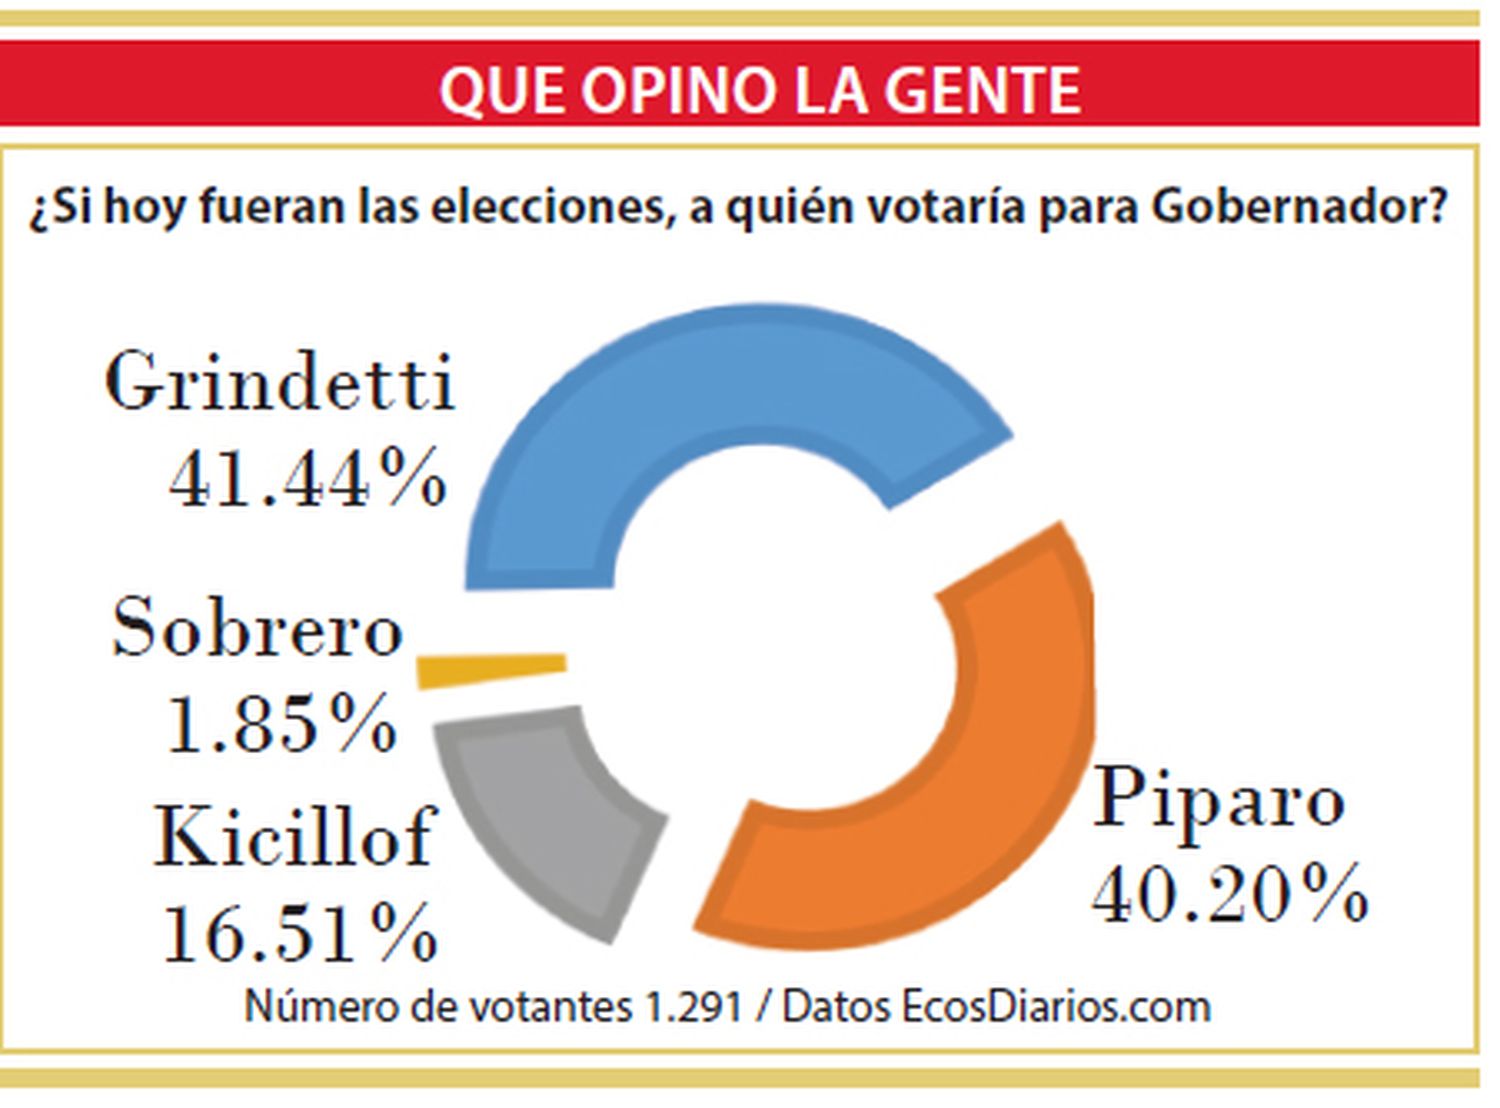 Néstor Grindetti el más votado en encuesta de elecos.com.ar